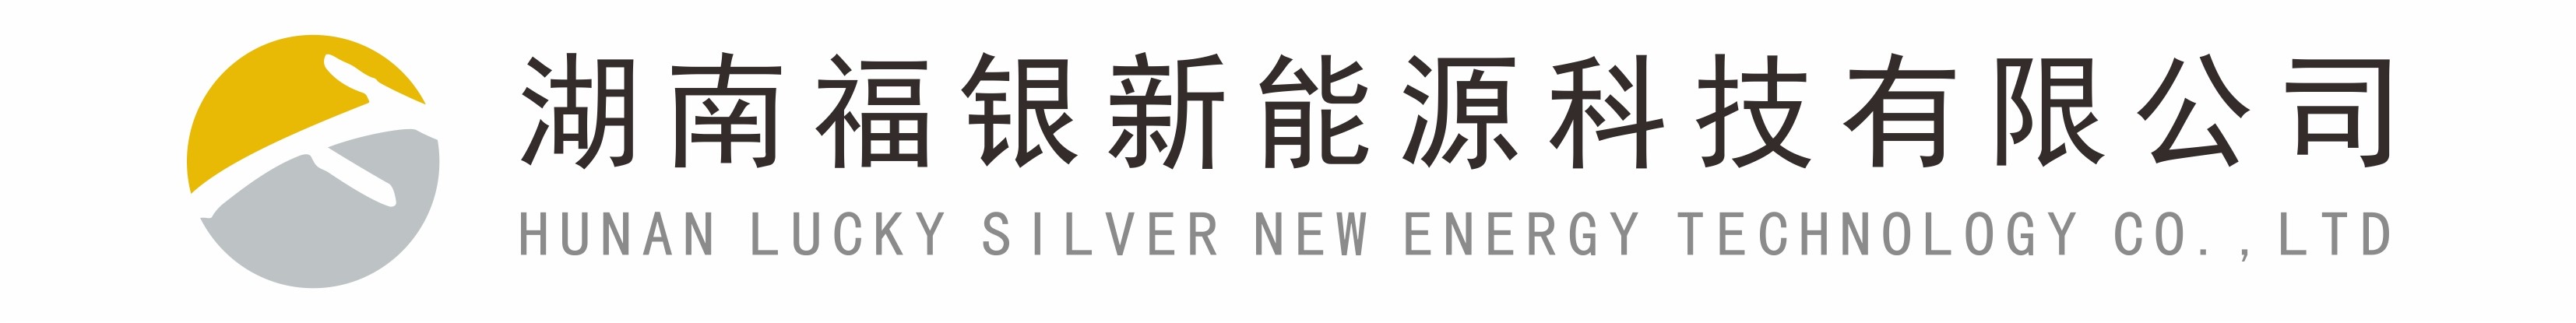 湖南福銀新能源科技有限公司